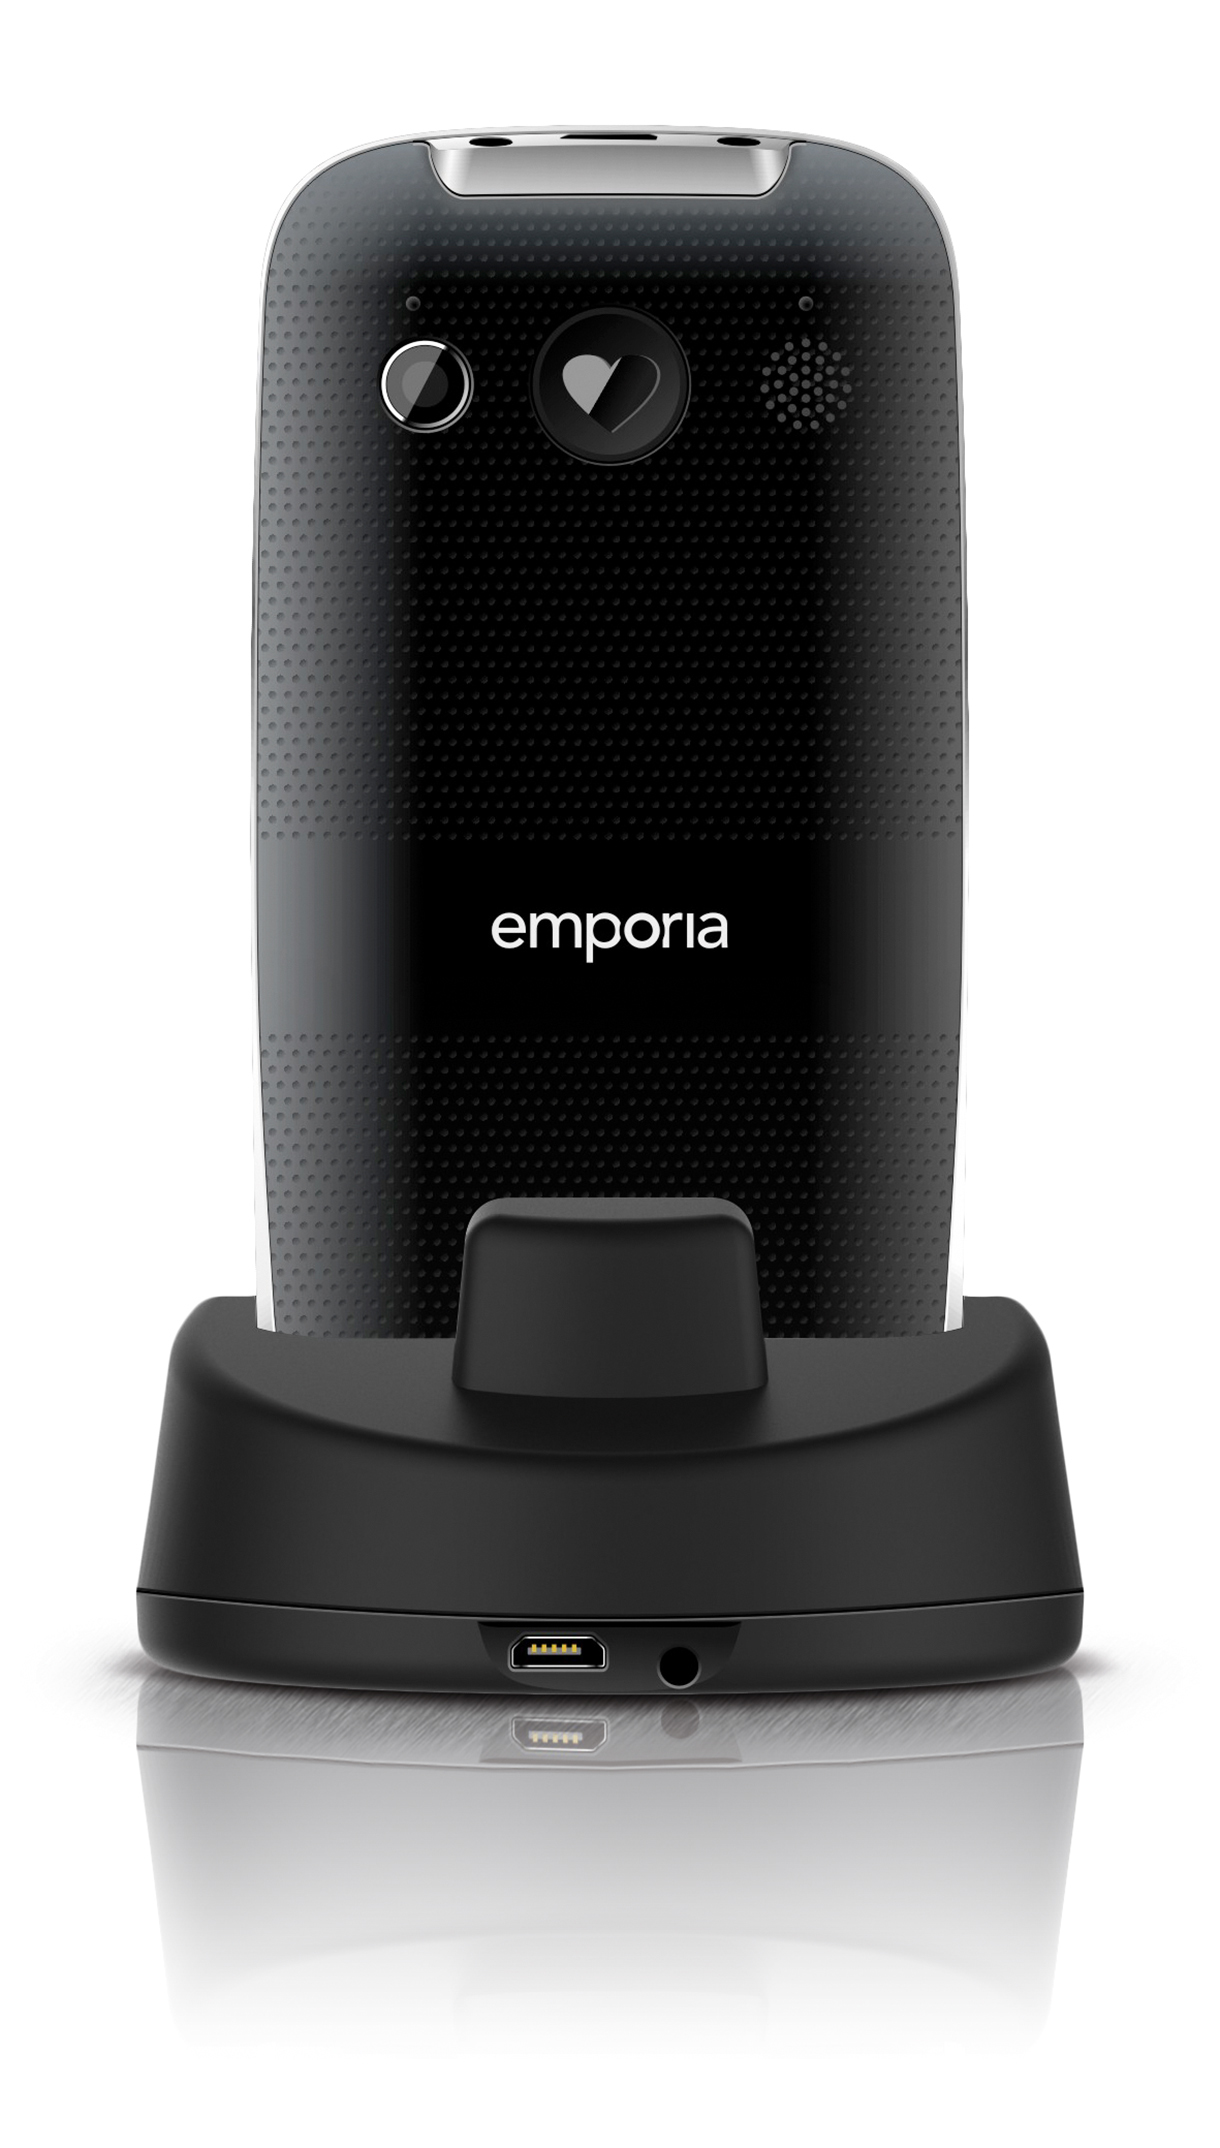 Emporia emporiaEUPHORIA V50 - Feature phone - microSD slot